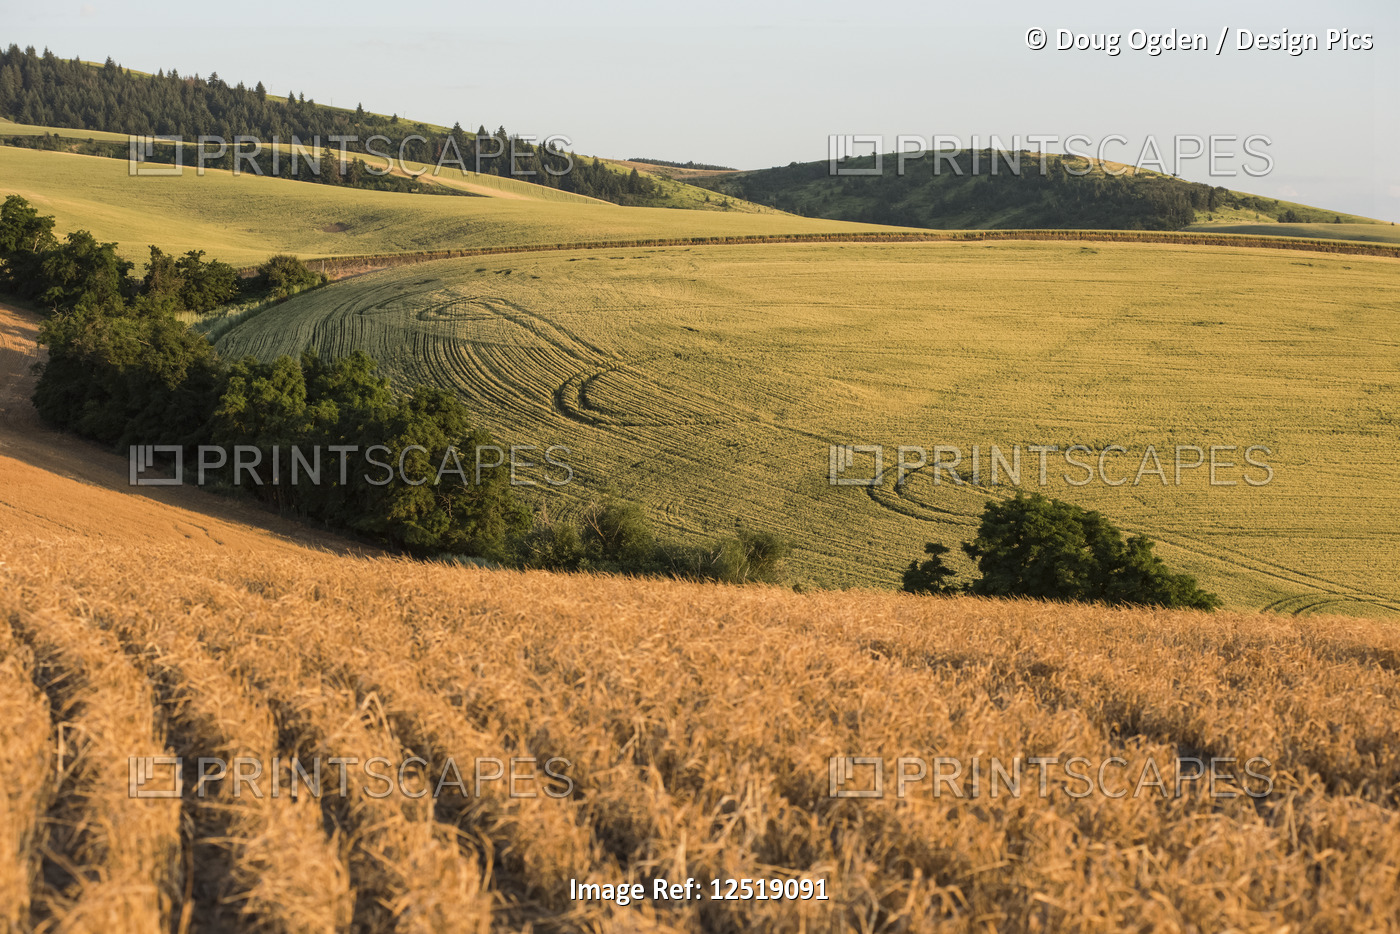 Rolling Hills of Grain Fields in Eastern Washington